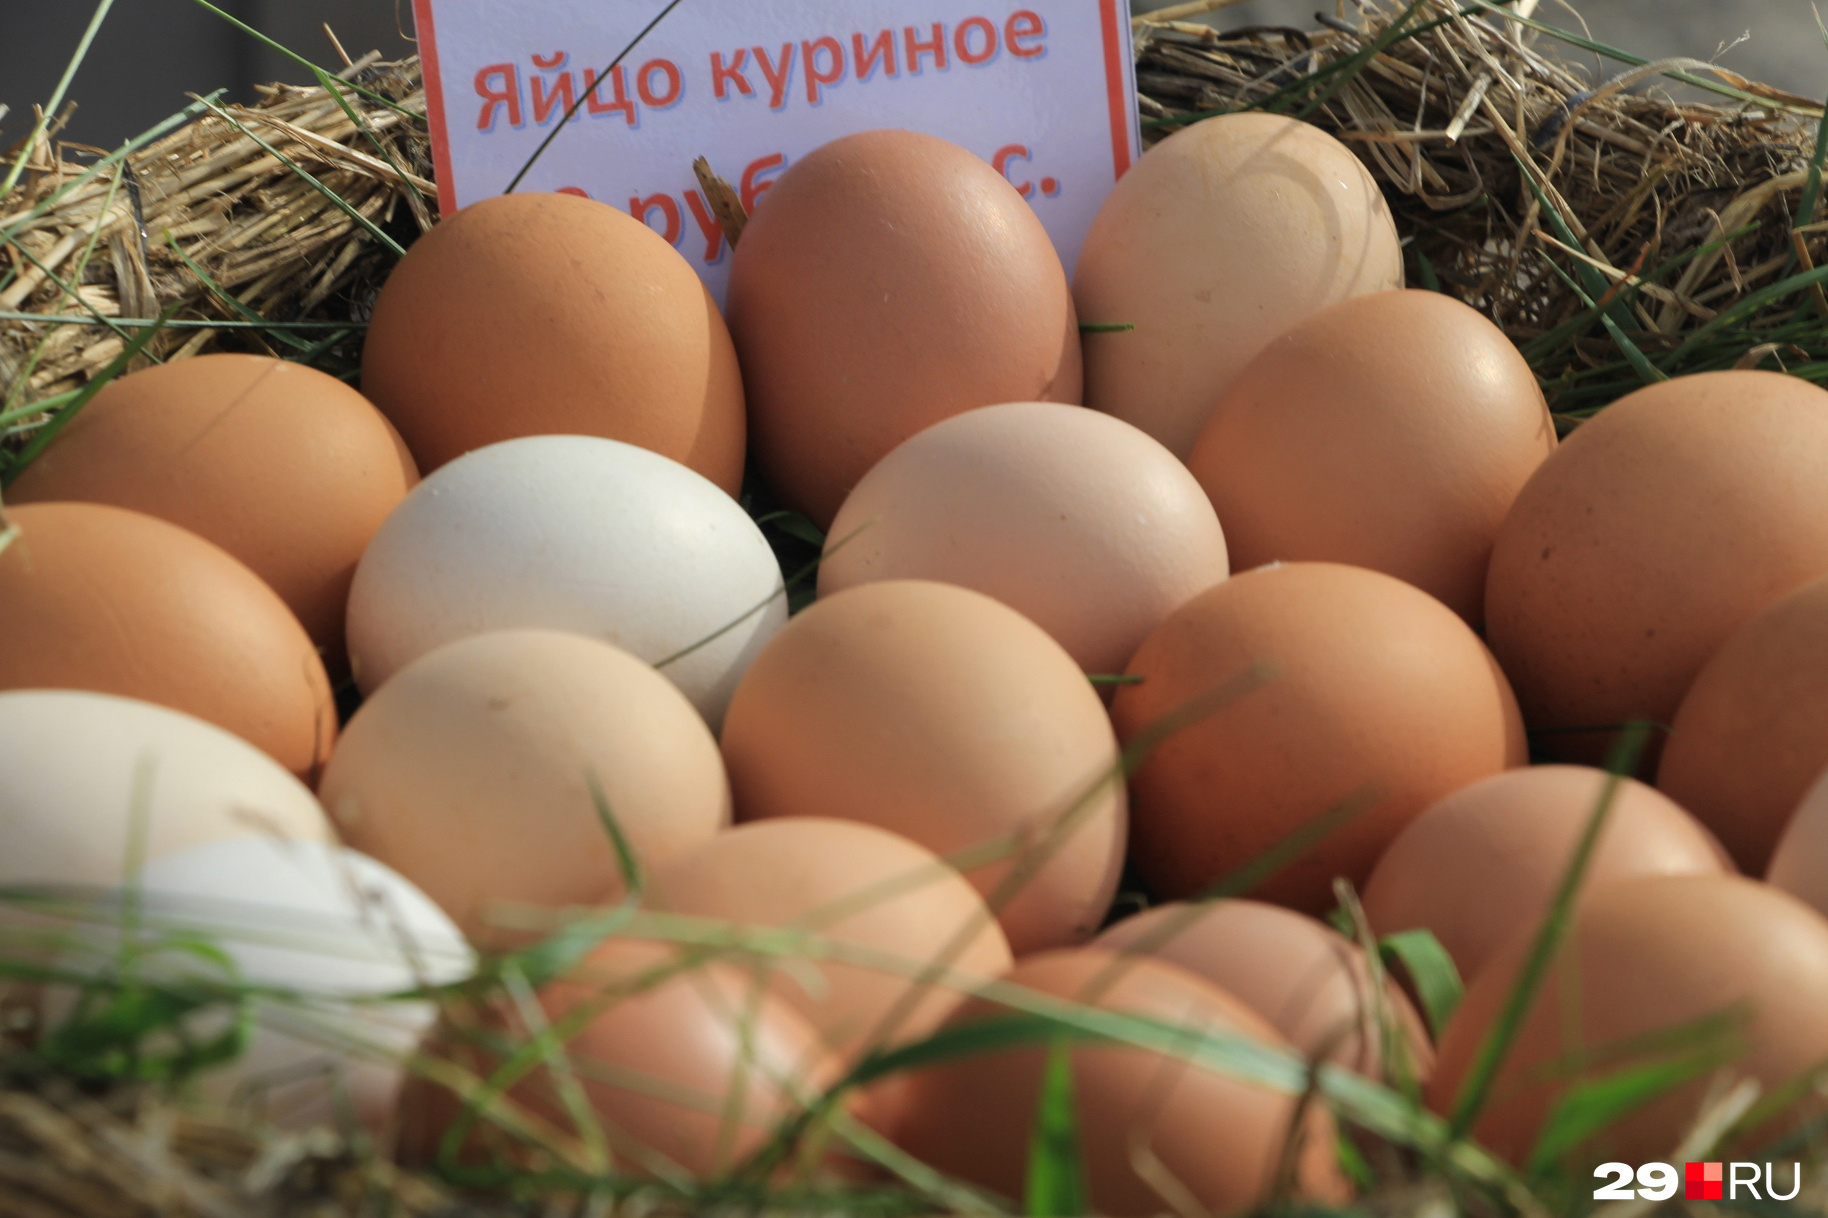 Нет бесполезных яиц — есть странные мифы